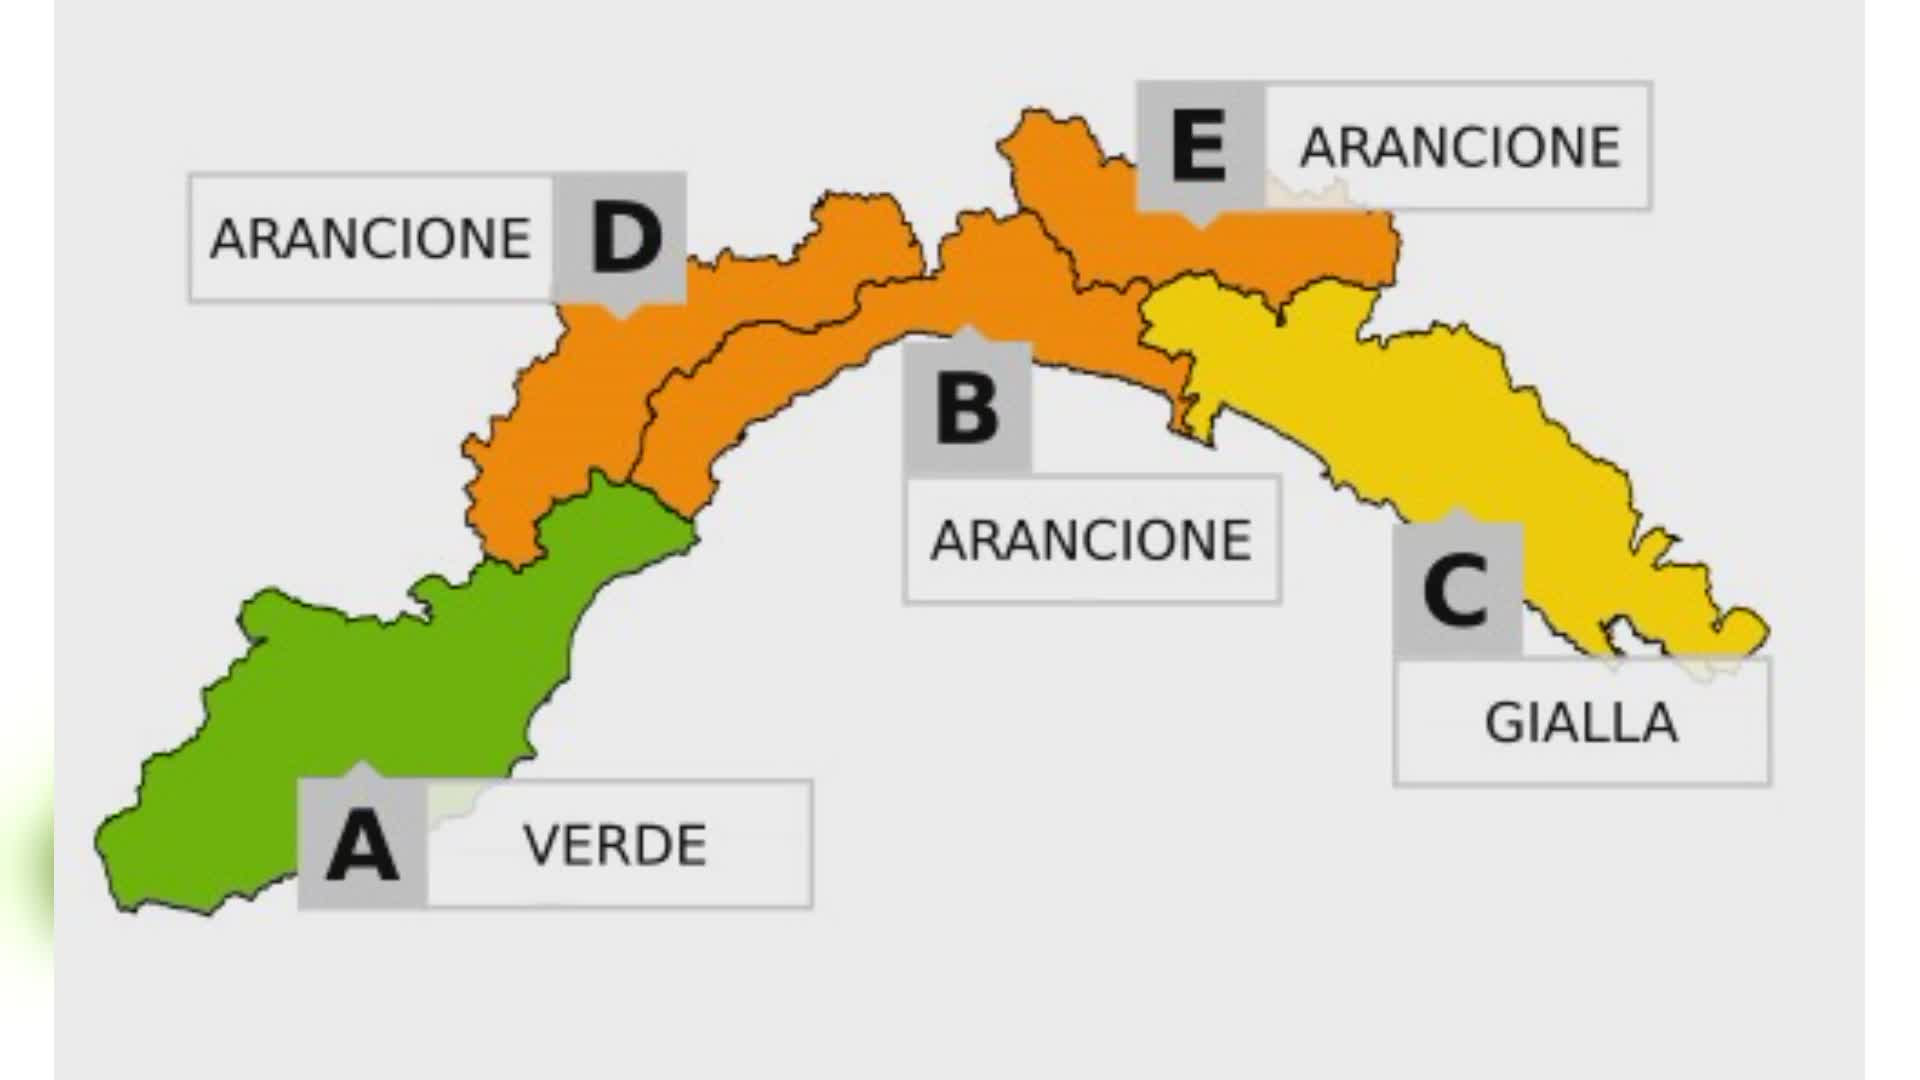 Maltempo in Liguria, dalle 17 è allerta gialla su Centro e Levante: dalle 20 diventa arancione fino a mezzanotte